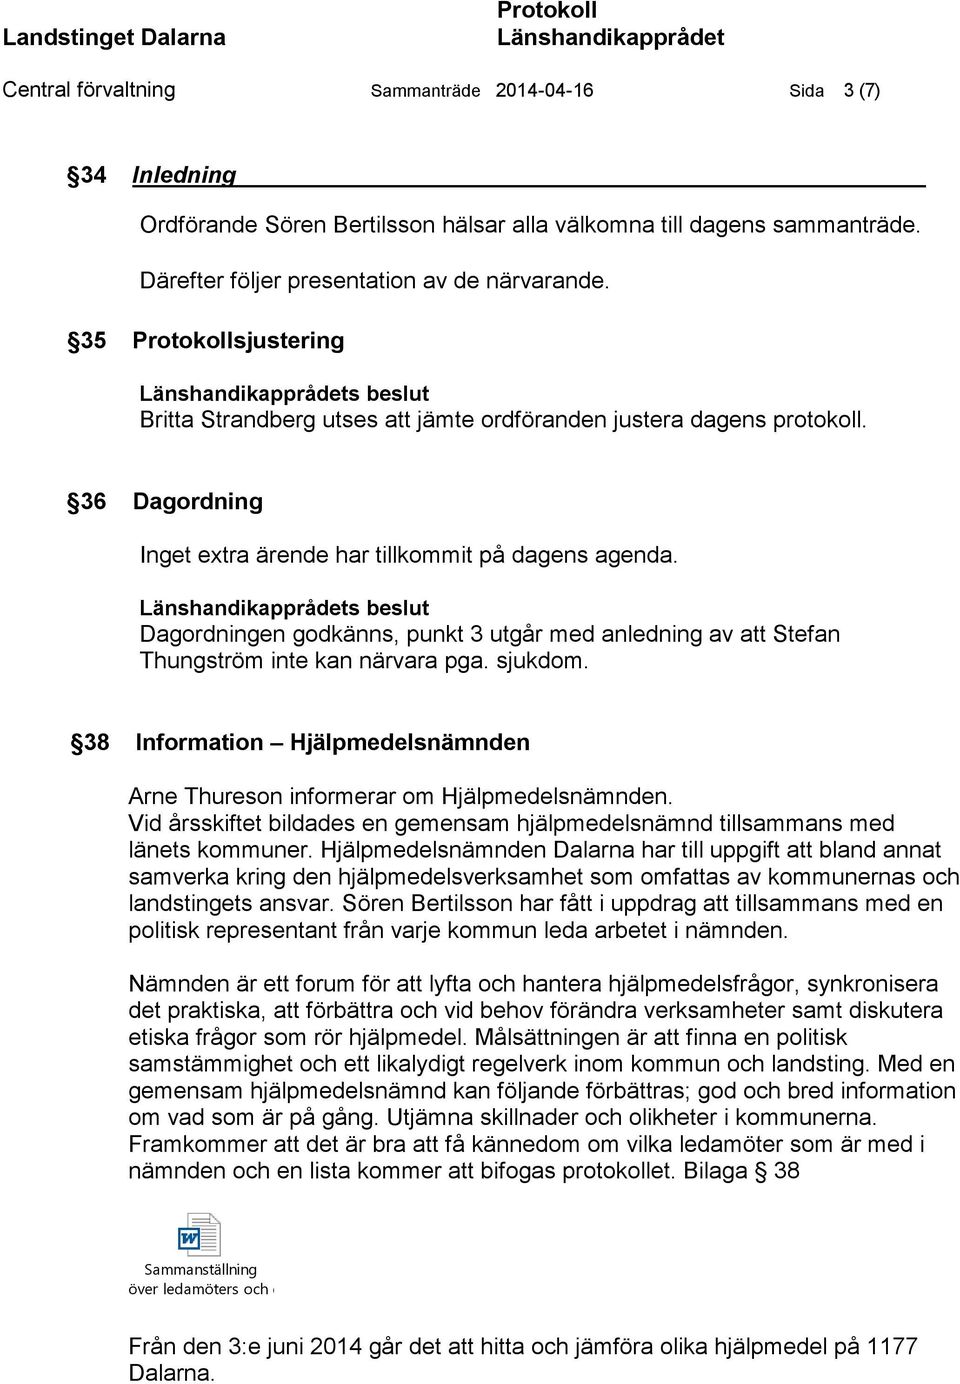 s beslut Dagordningen godkänns, punkt 3 utgår med anledning av att Stefan Thungström inte kan närvara pga. sjukdom. 38 Information Hjälpmedelsnämnden Arne Thureson informerar om Hjälpmedelsnämnden.